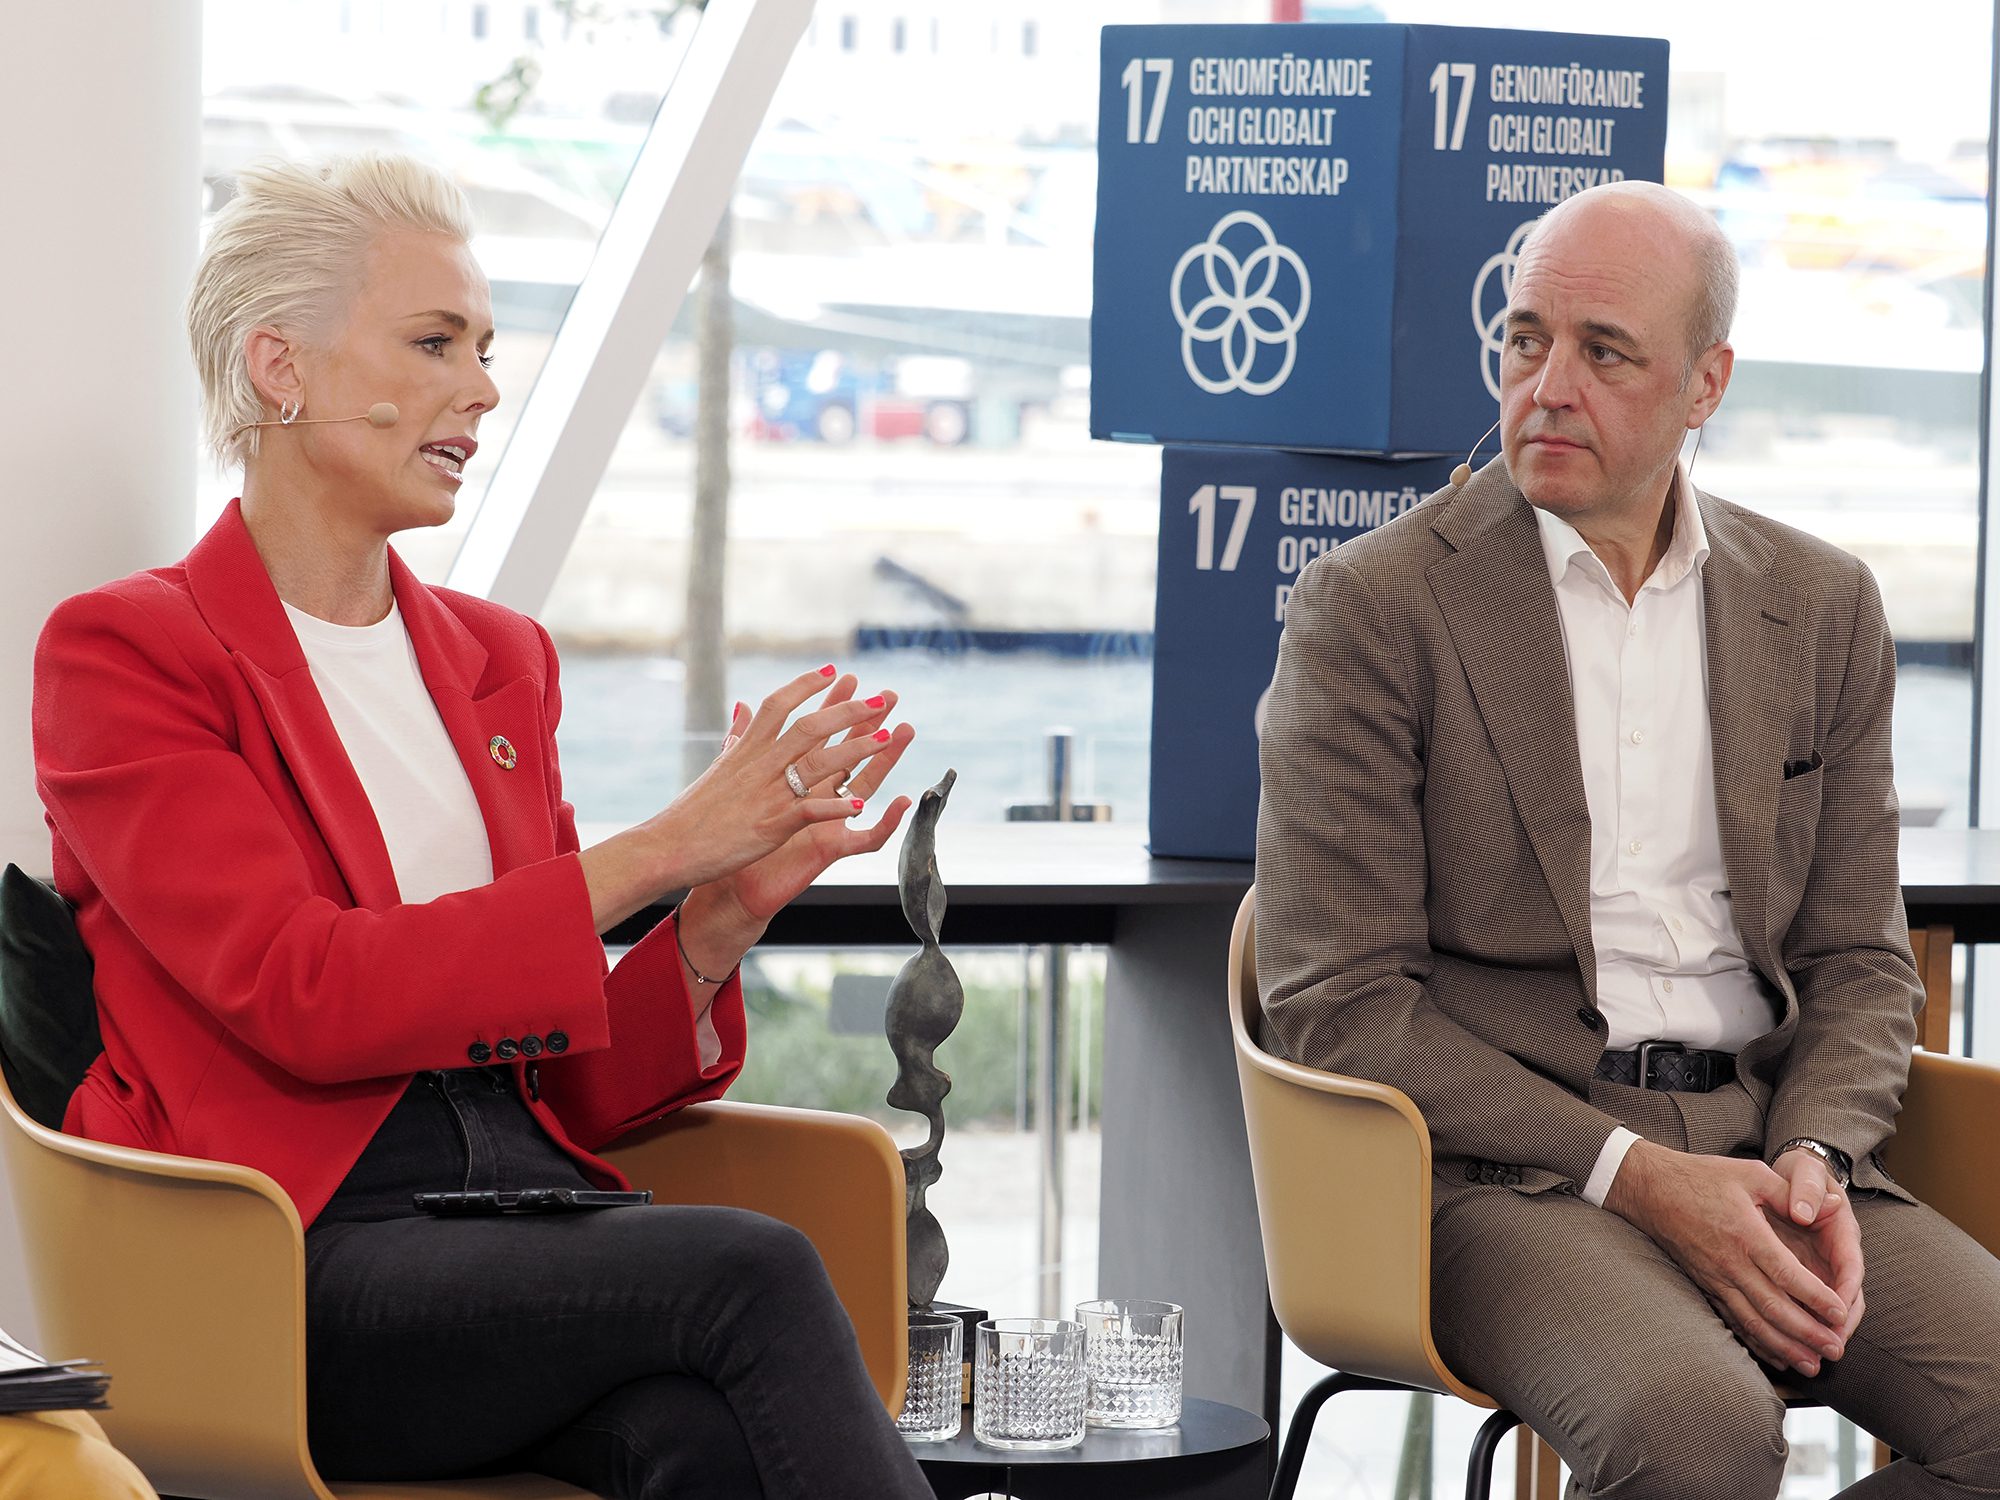 A Sustainable Tomorrow: 10 000 deltagare på Sveriges största digiloga hållbarhetskonferens